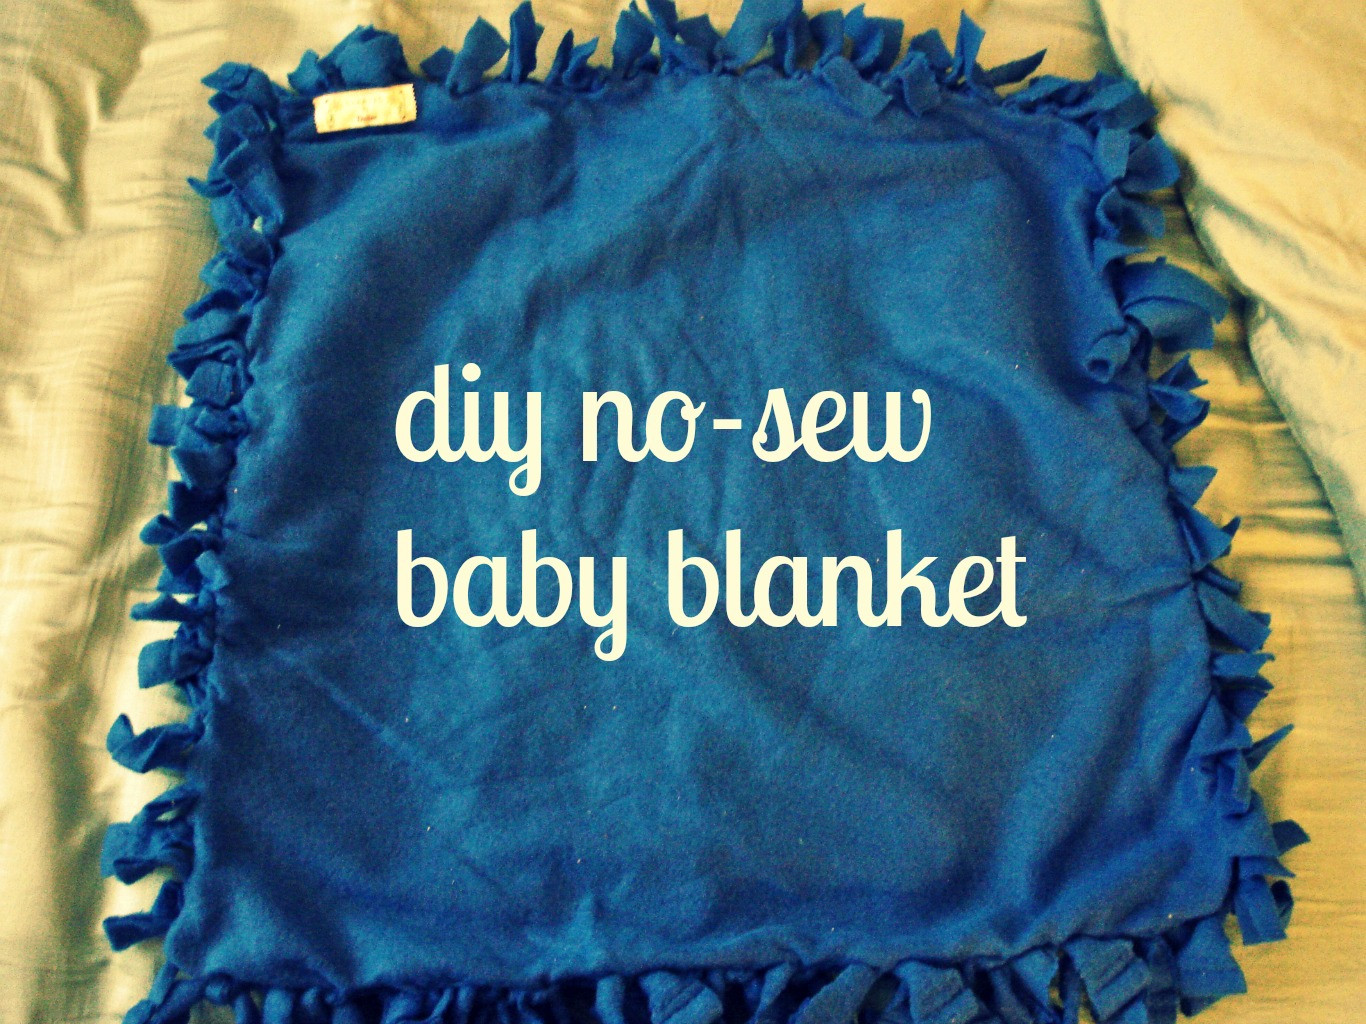 DIY No Sew Baby Blanket
 diy no sew baby blanket